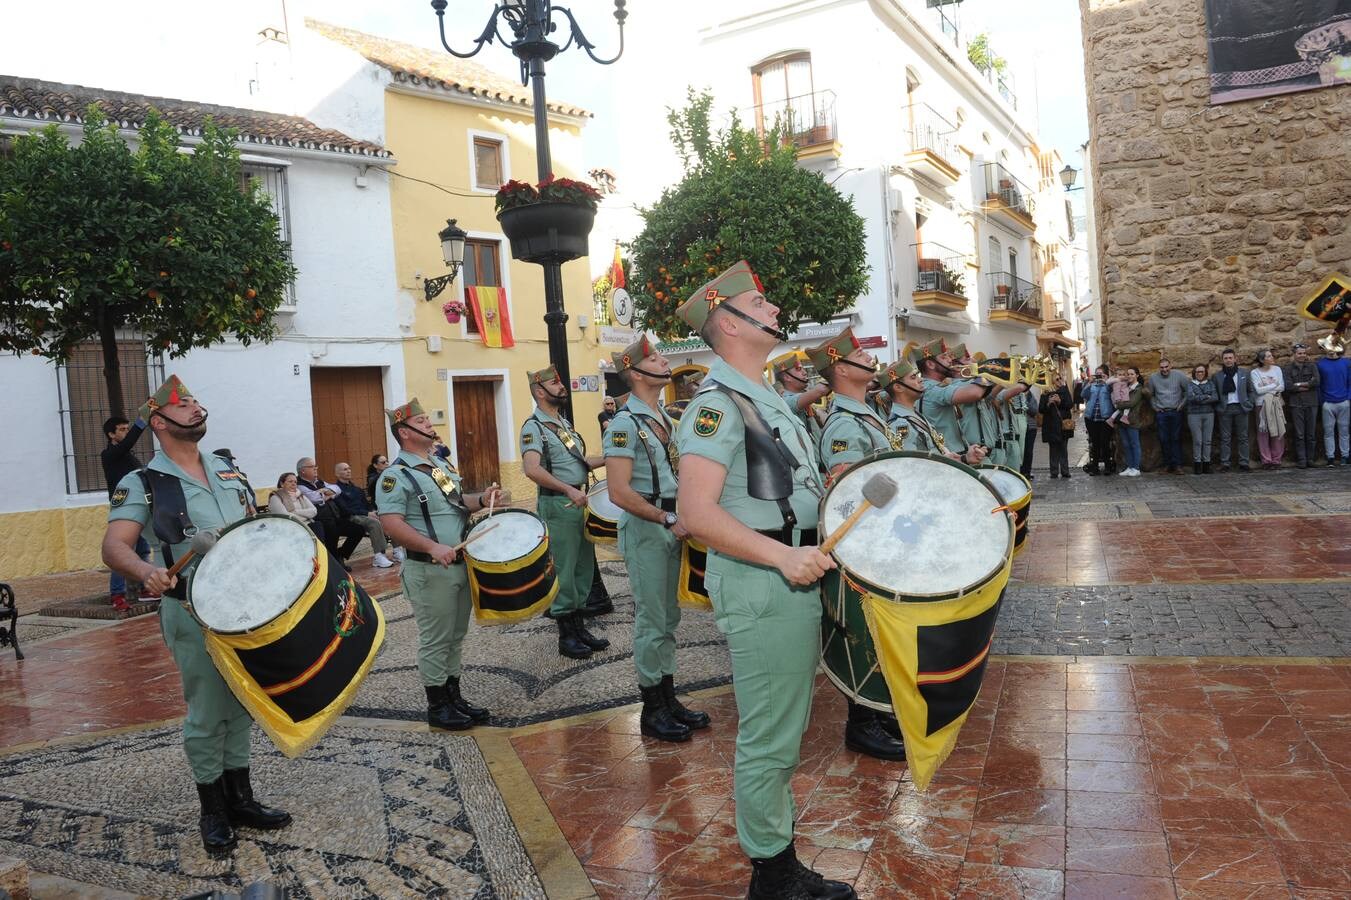 Jornada importante para las hermandades con vínculos legionarios, que sehan reunido en Marbella con el objetivo de estrechar lazos en el marco de un encuentro nacional, el segundo que se organiza de estas características en España